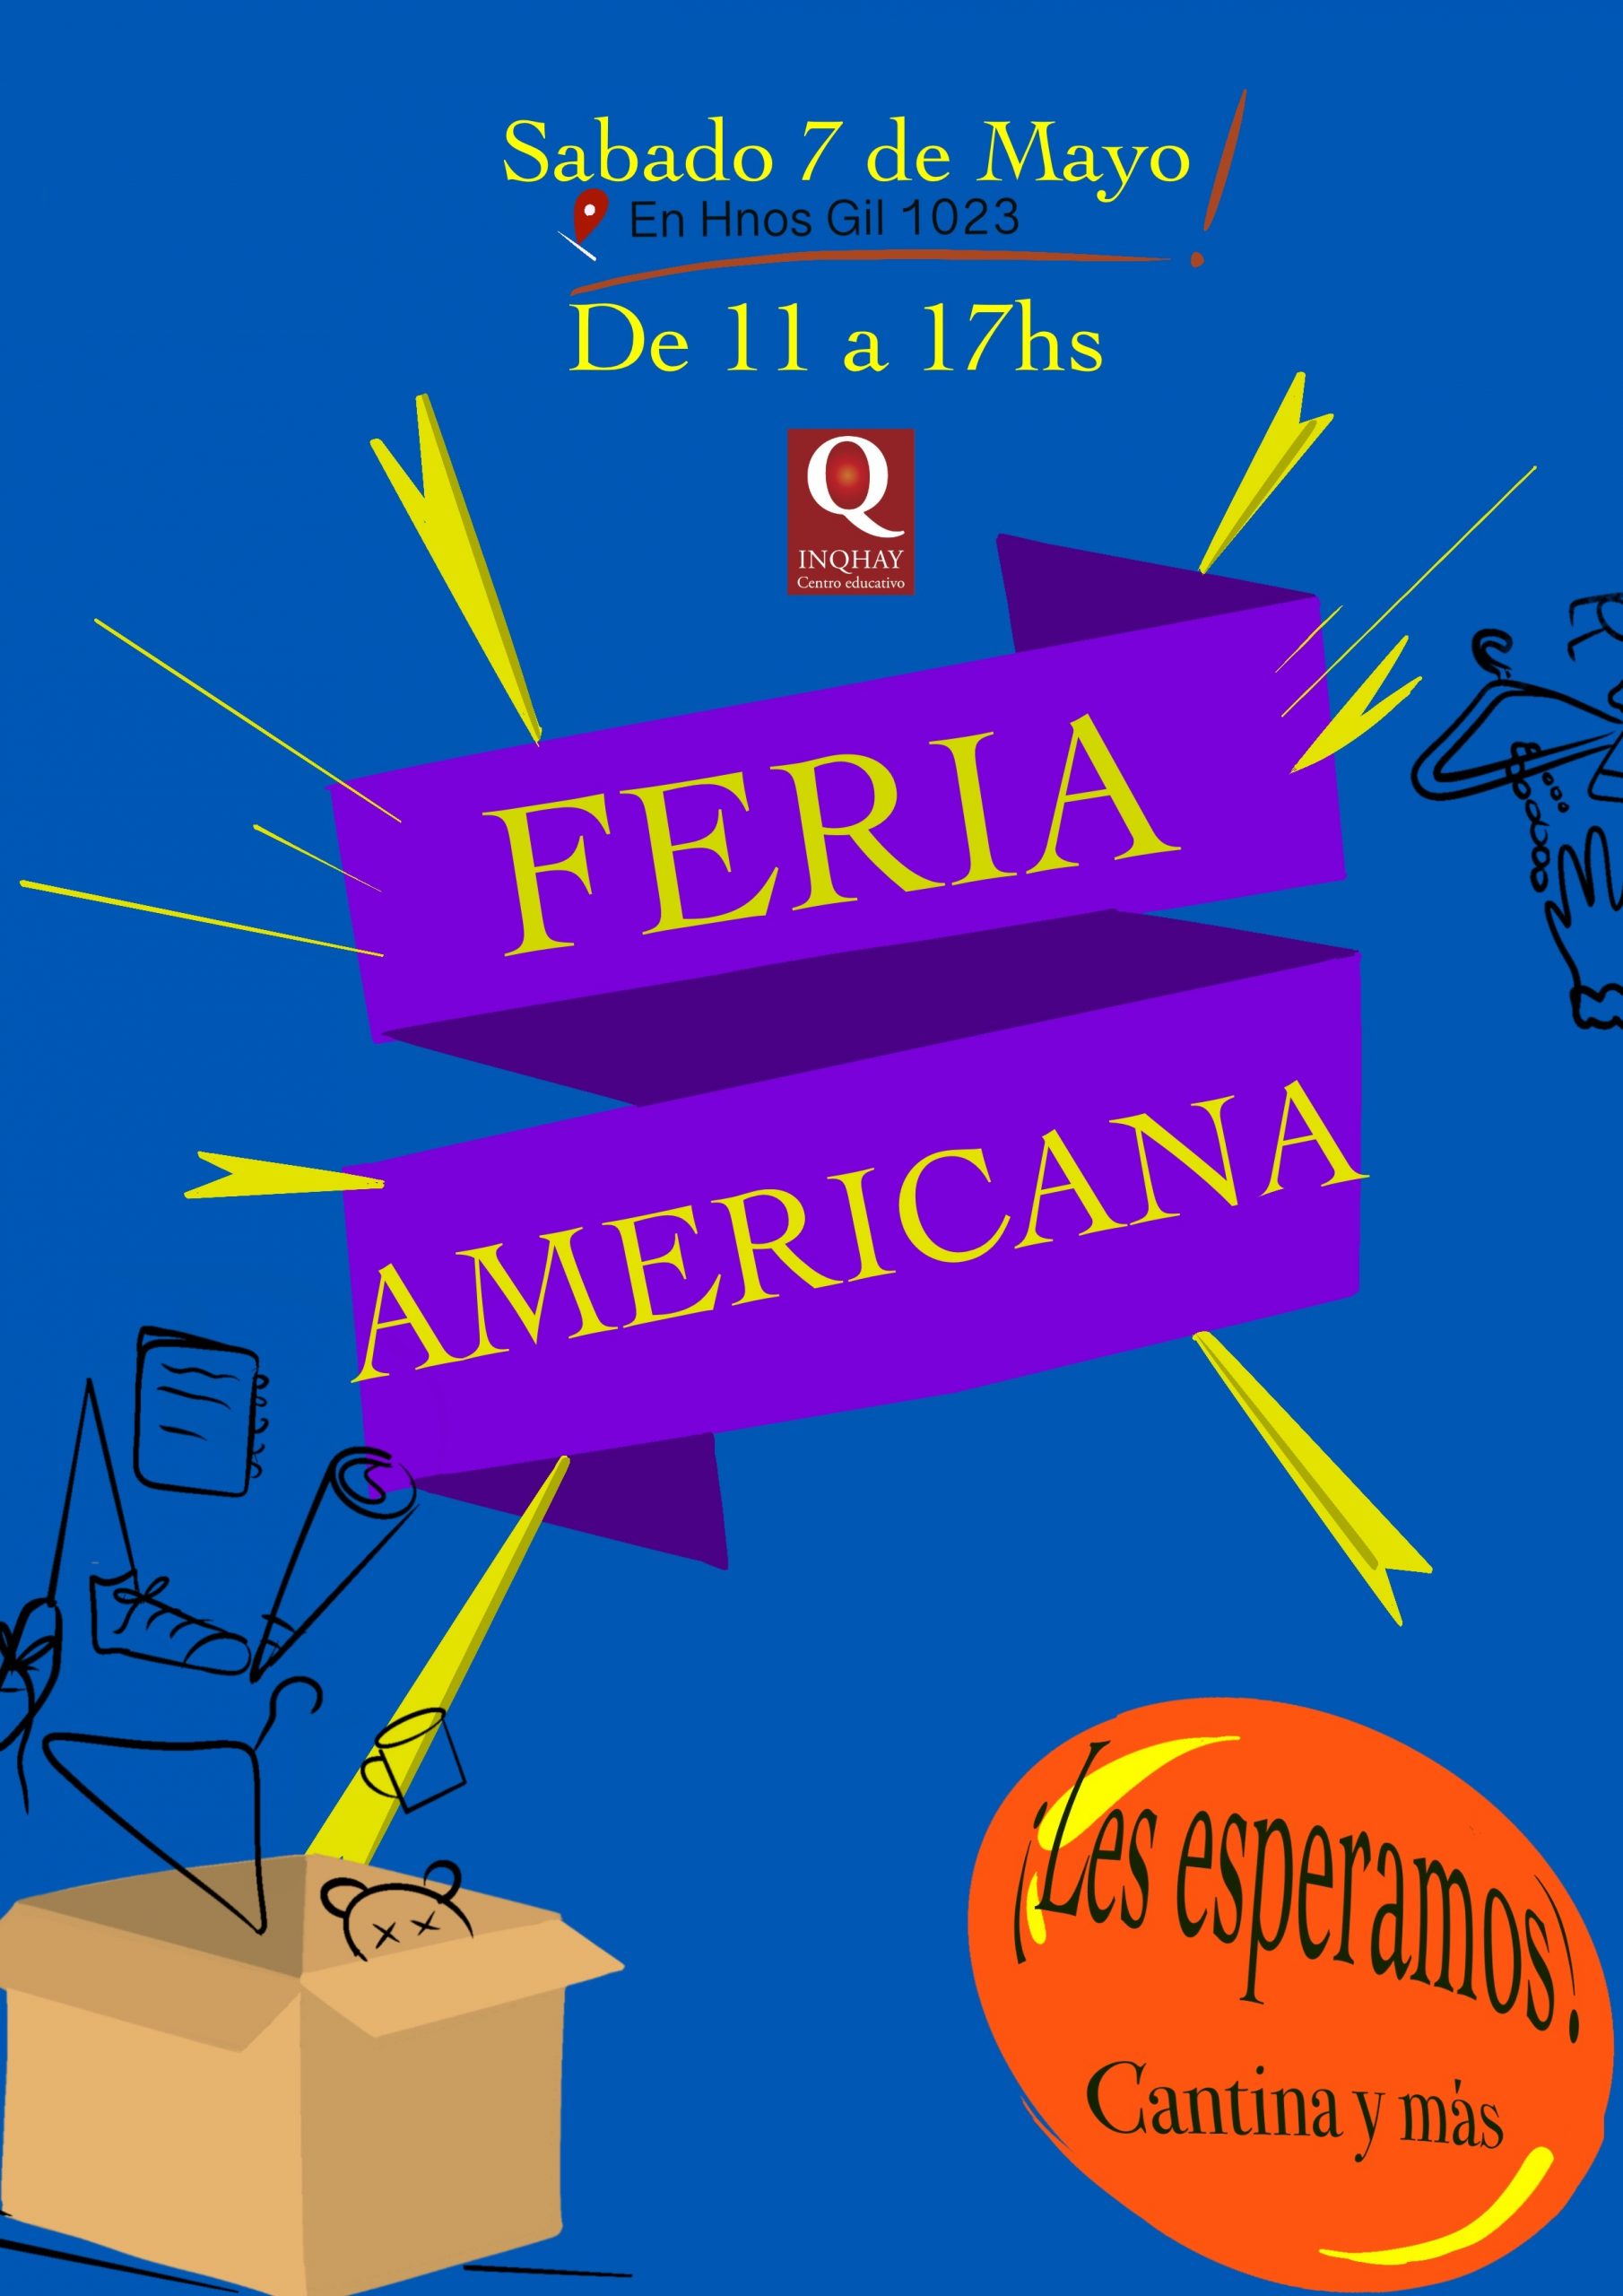 Feria Americana Online updated - Feria Americana Online